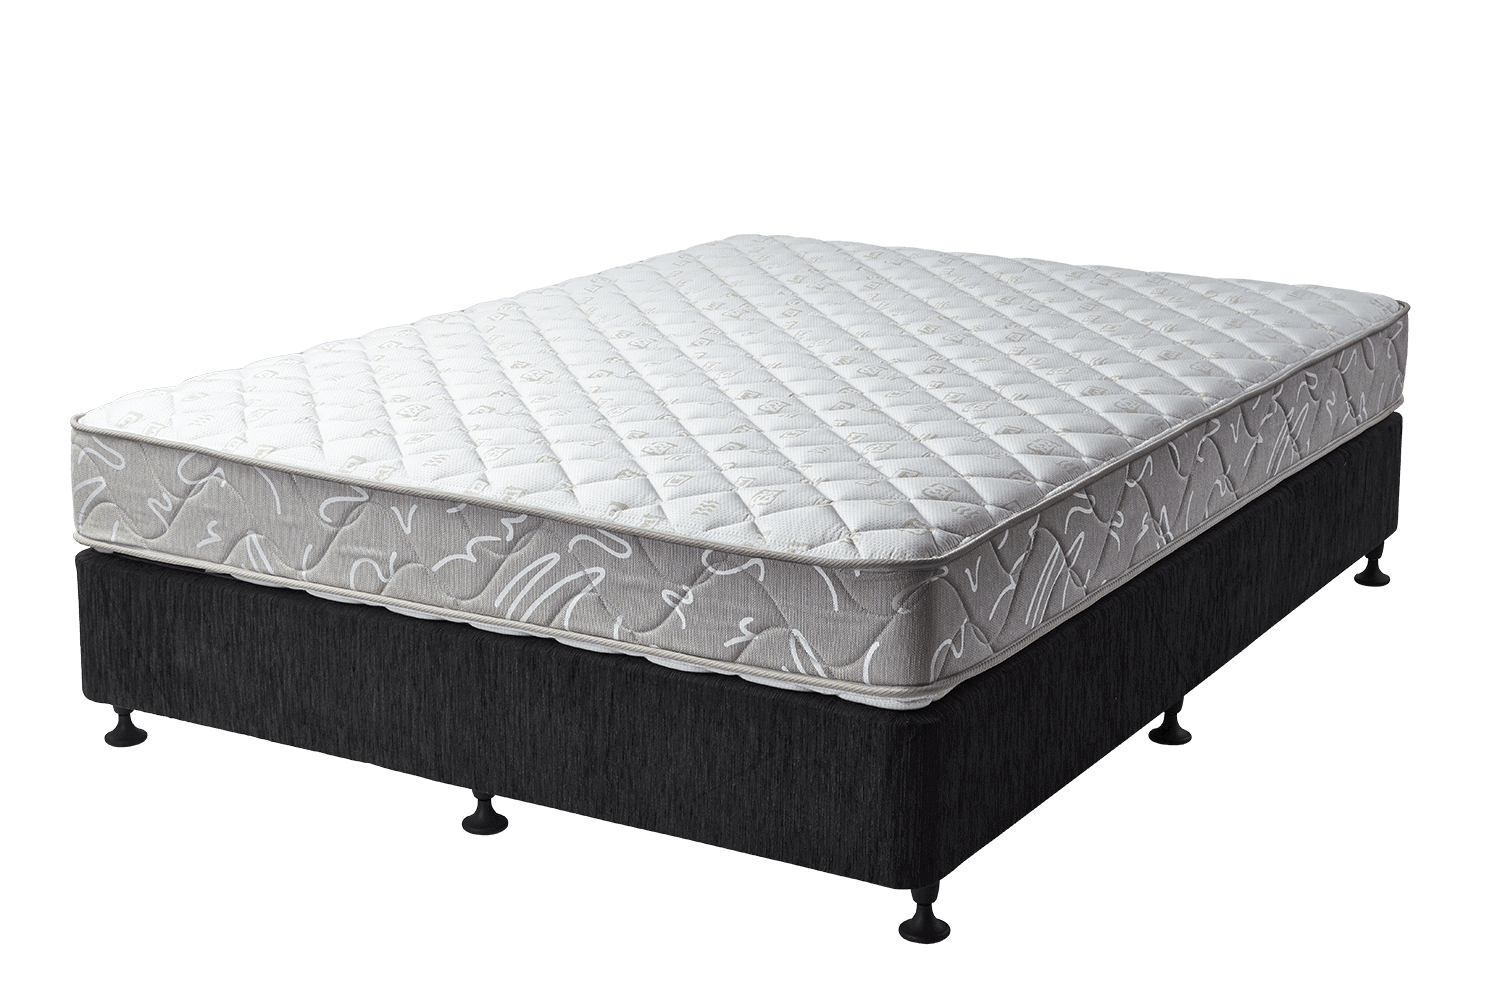 hillviee luxsuras firm mattress